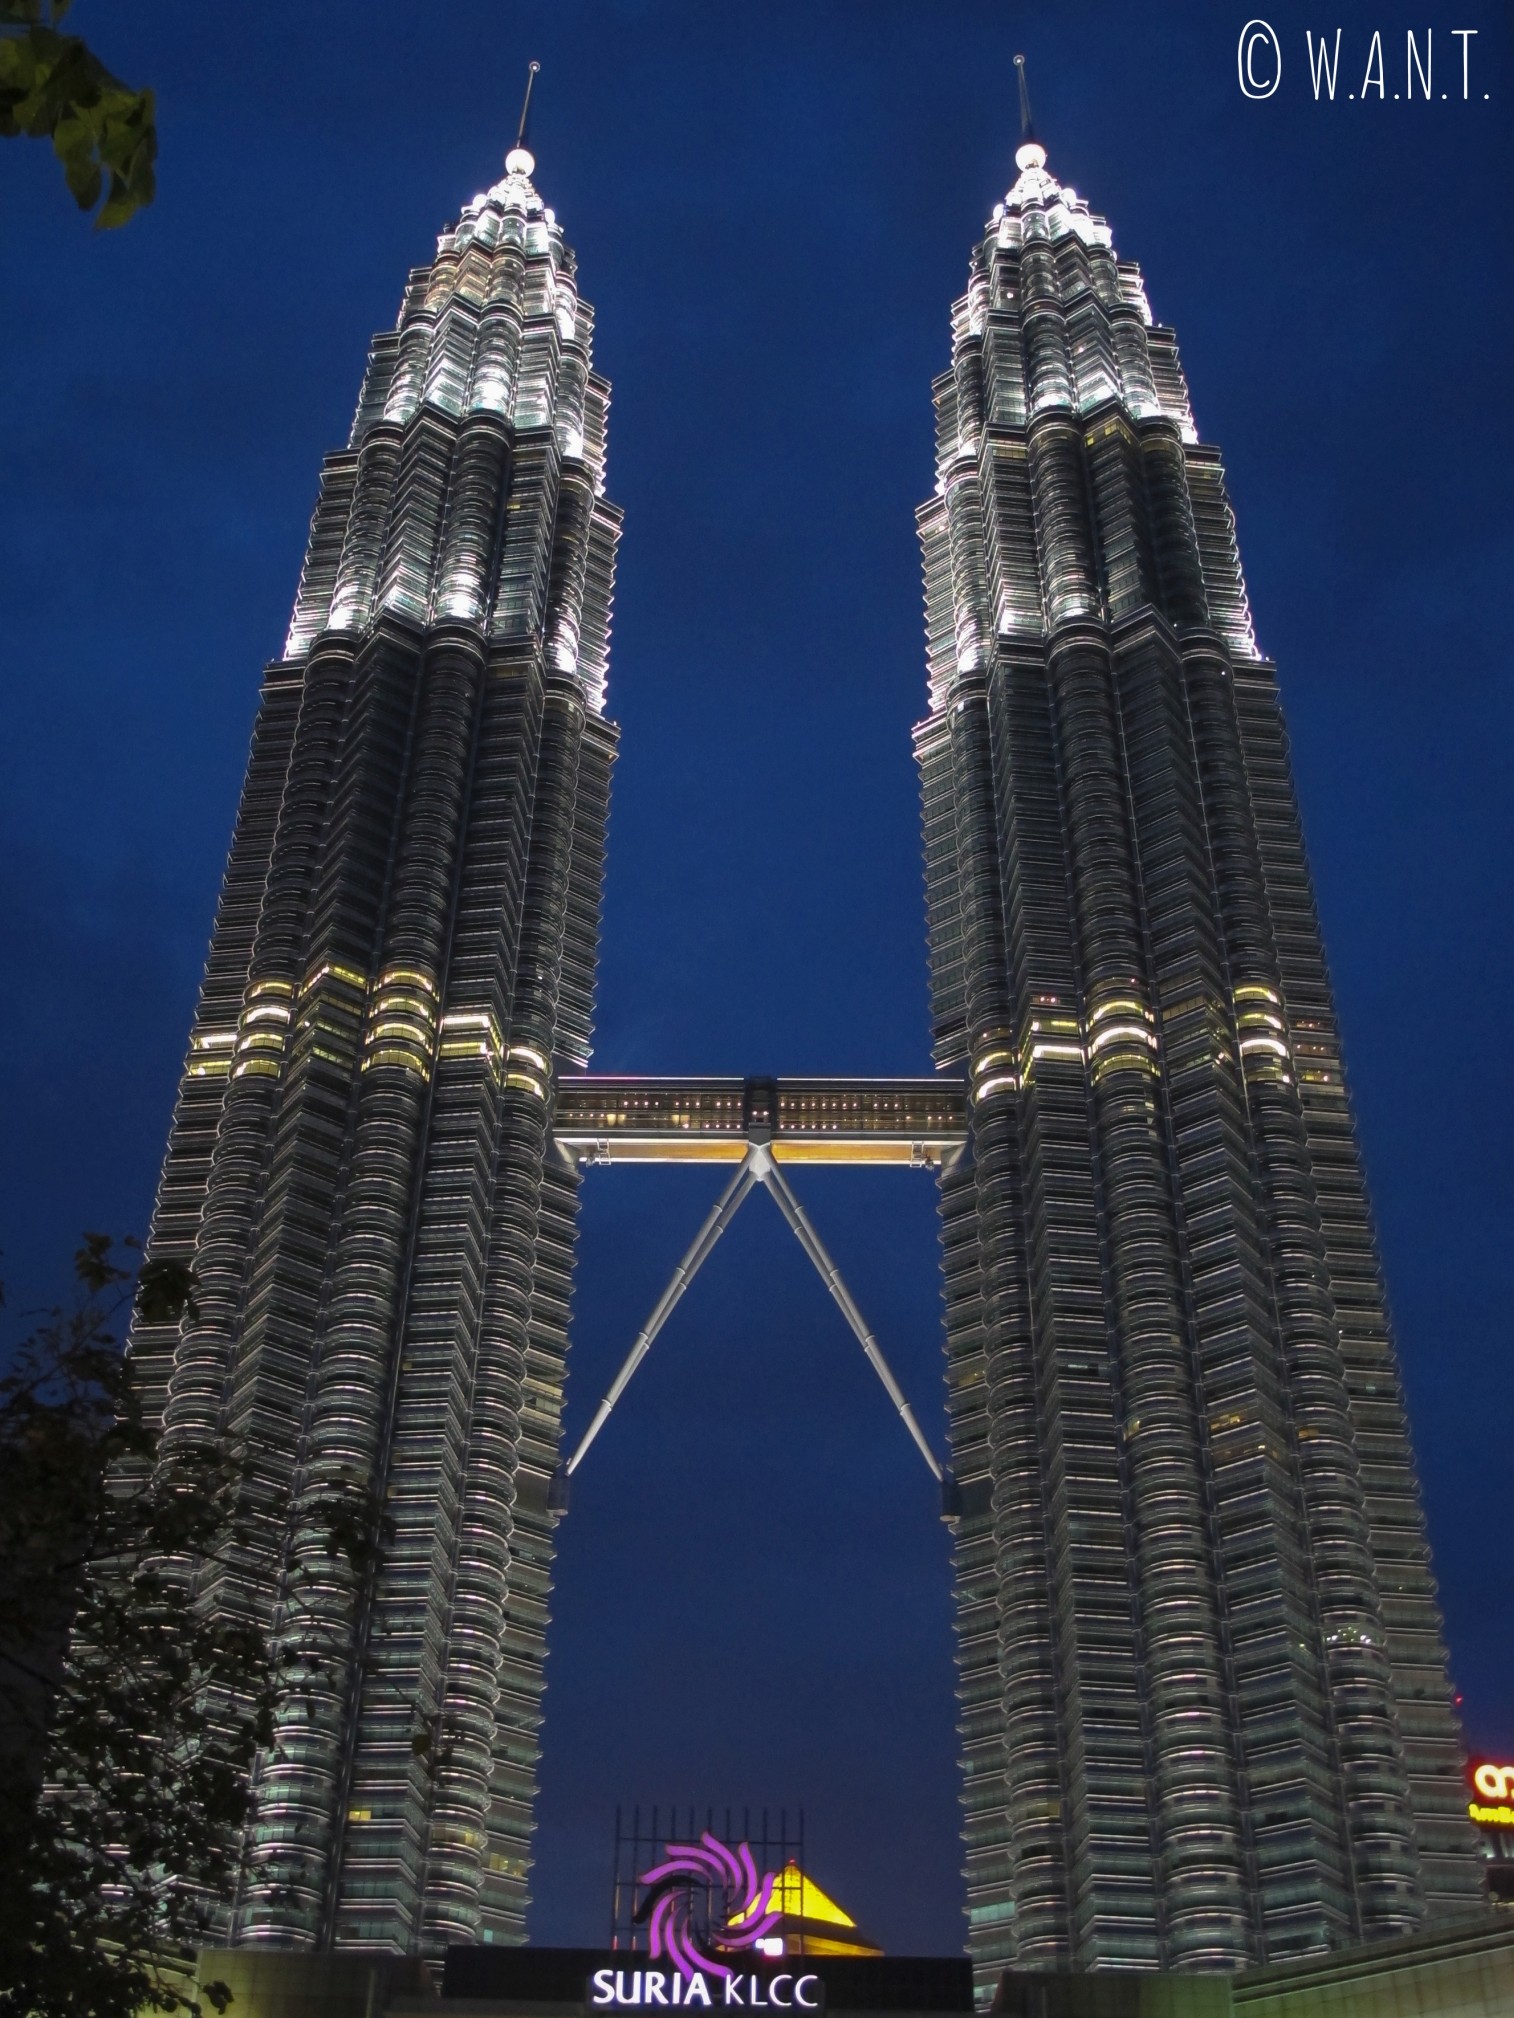 La nuit, les Tours jumelles Petronas sont illuminées